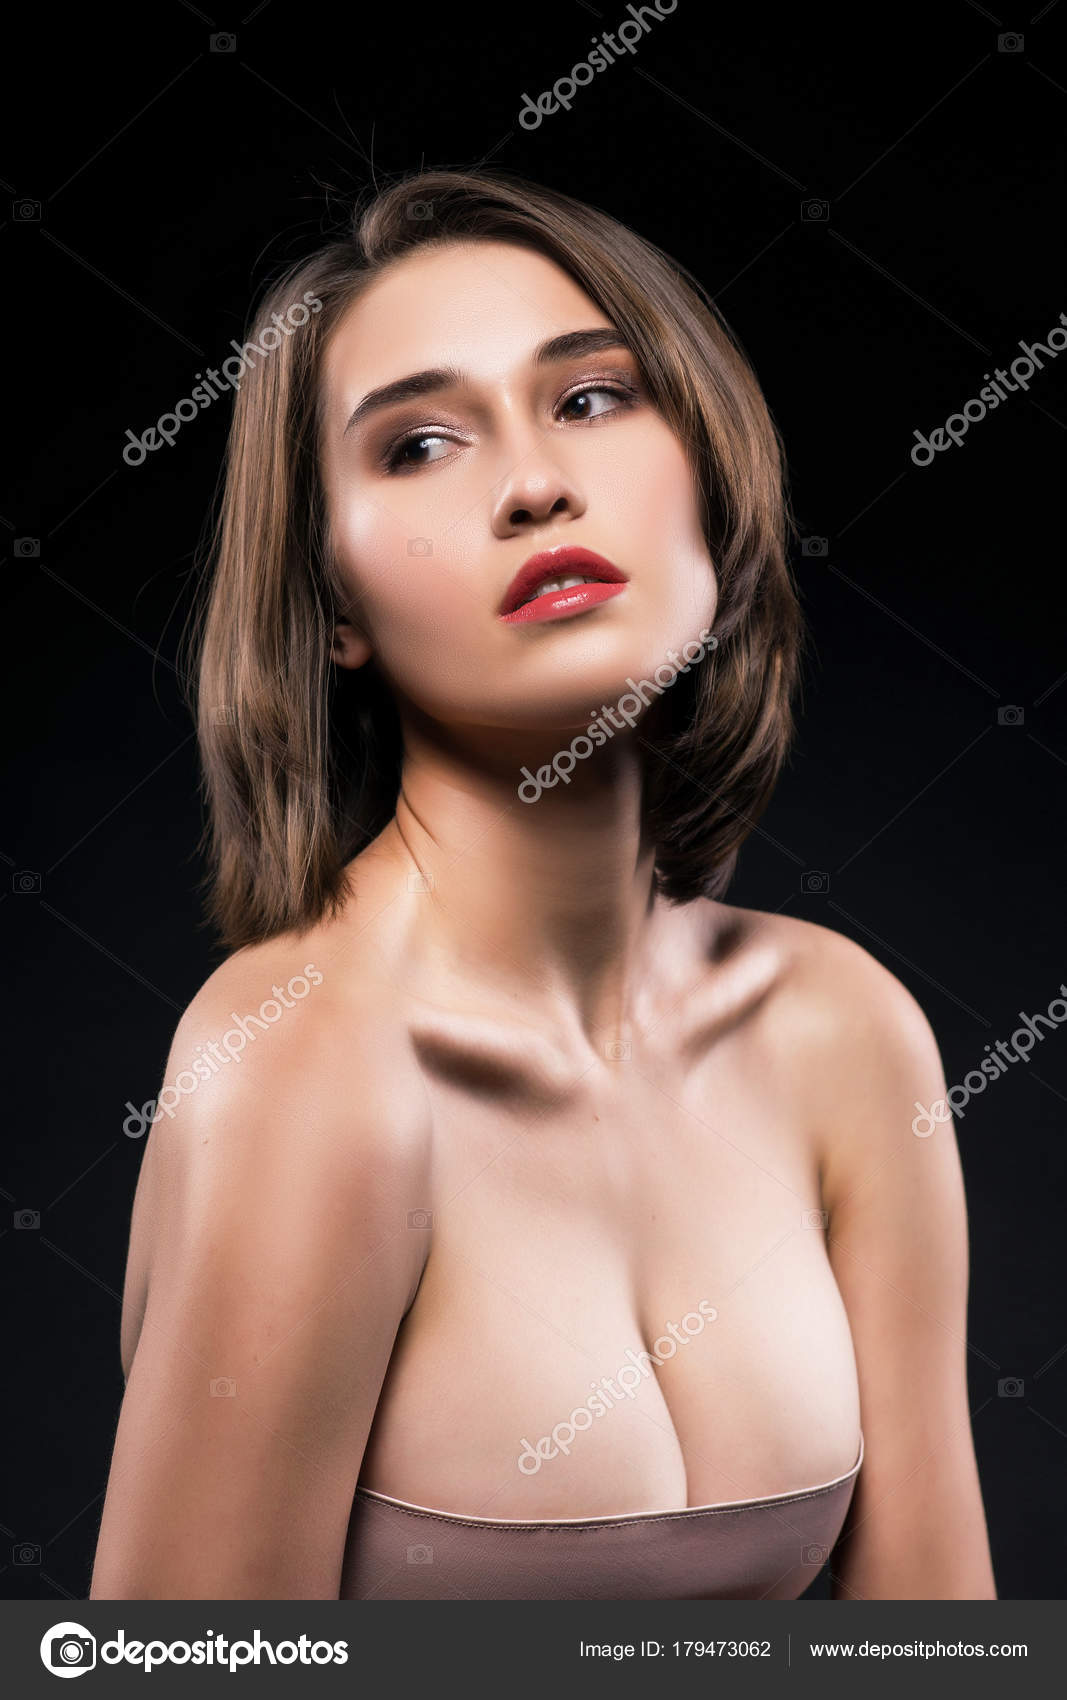 Beautiful big breasted mixed asian-caucasian race girl. Stock